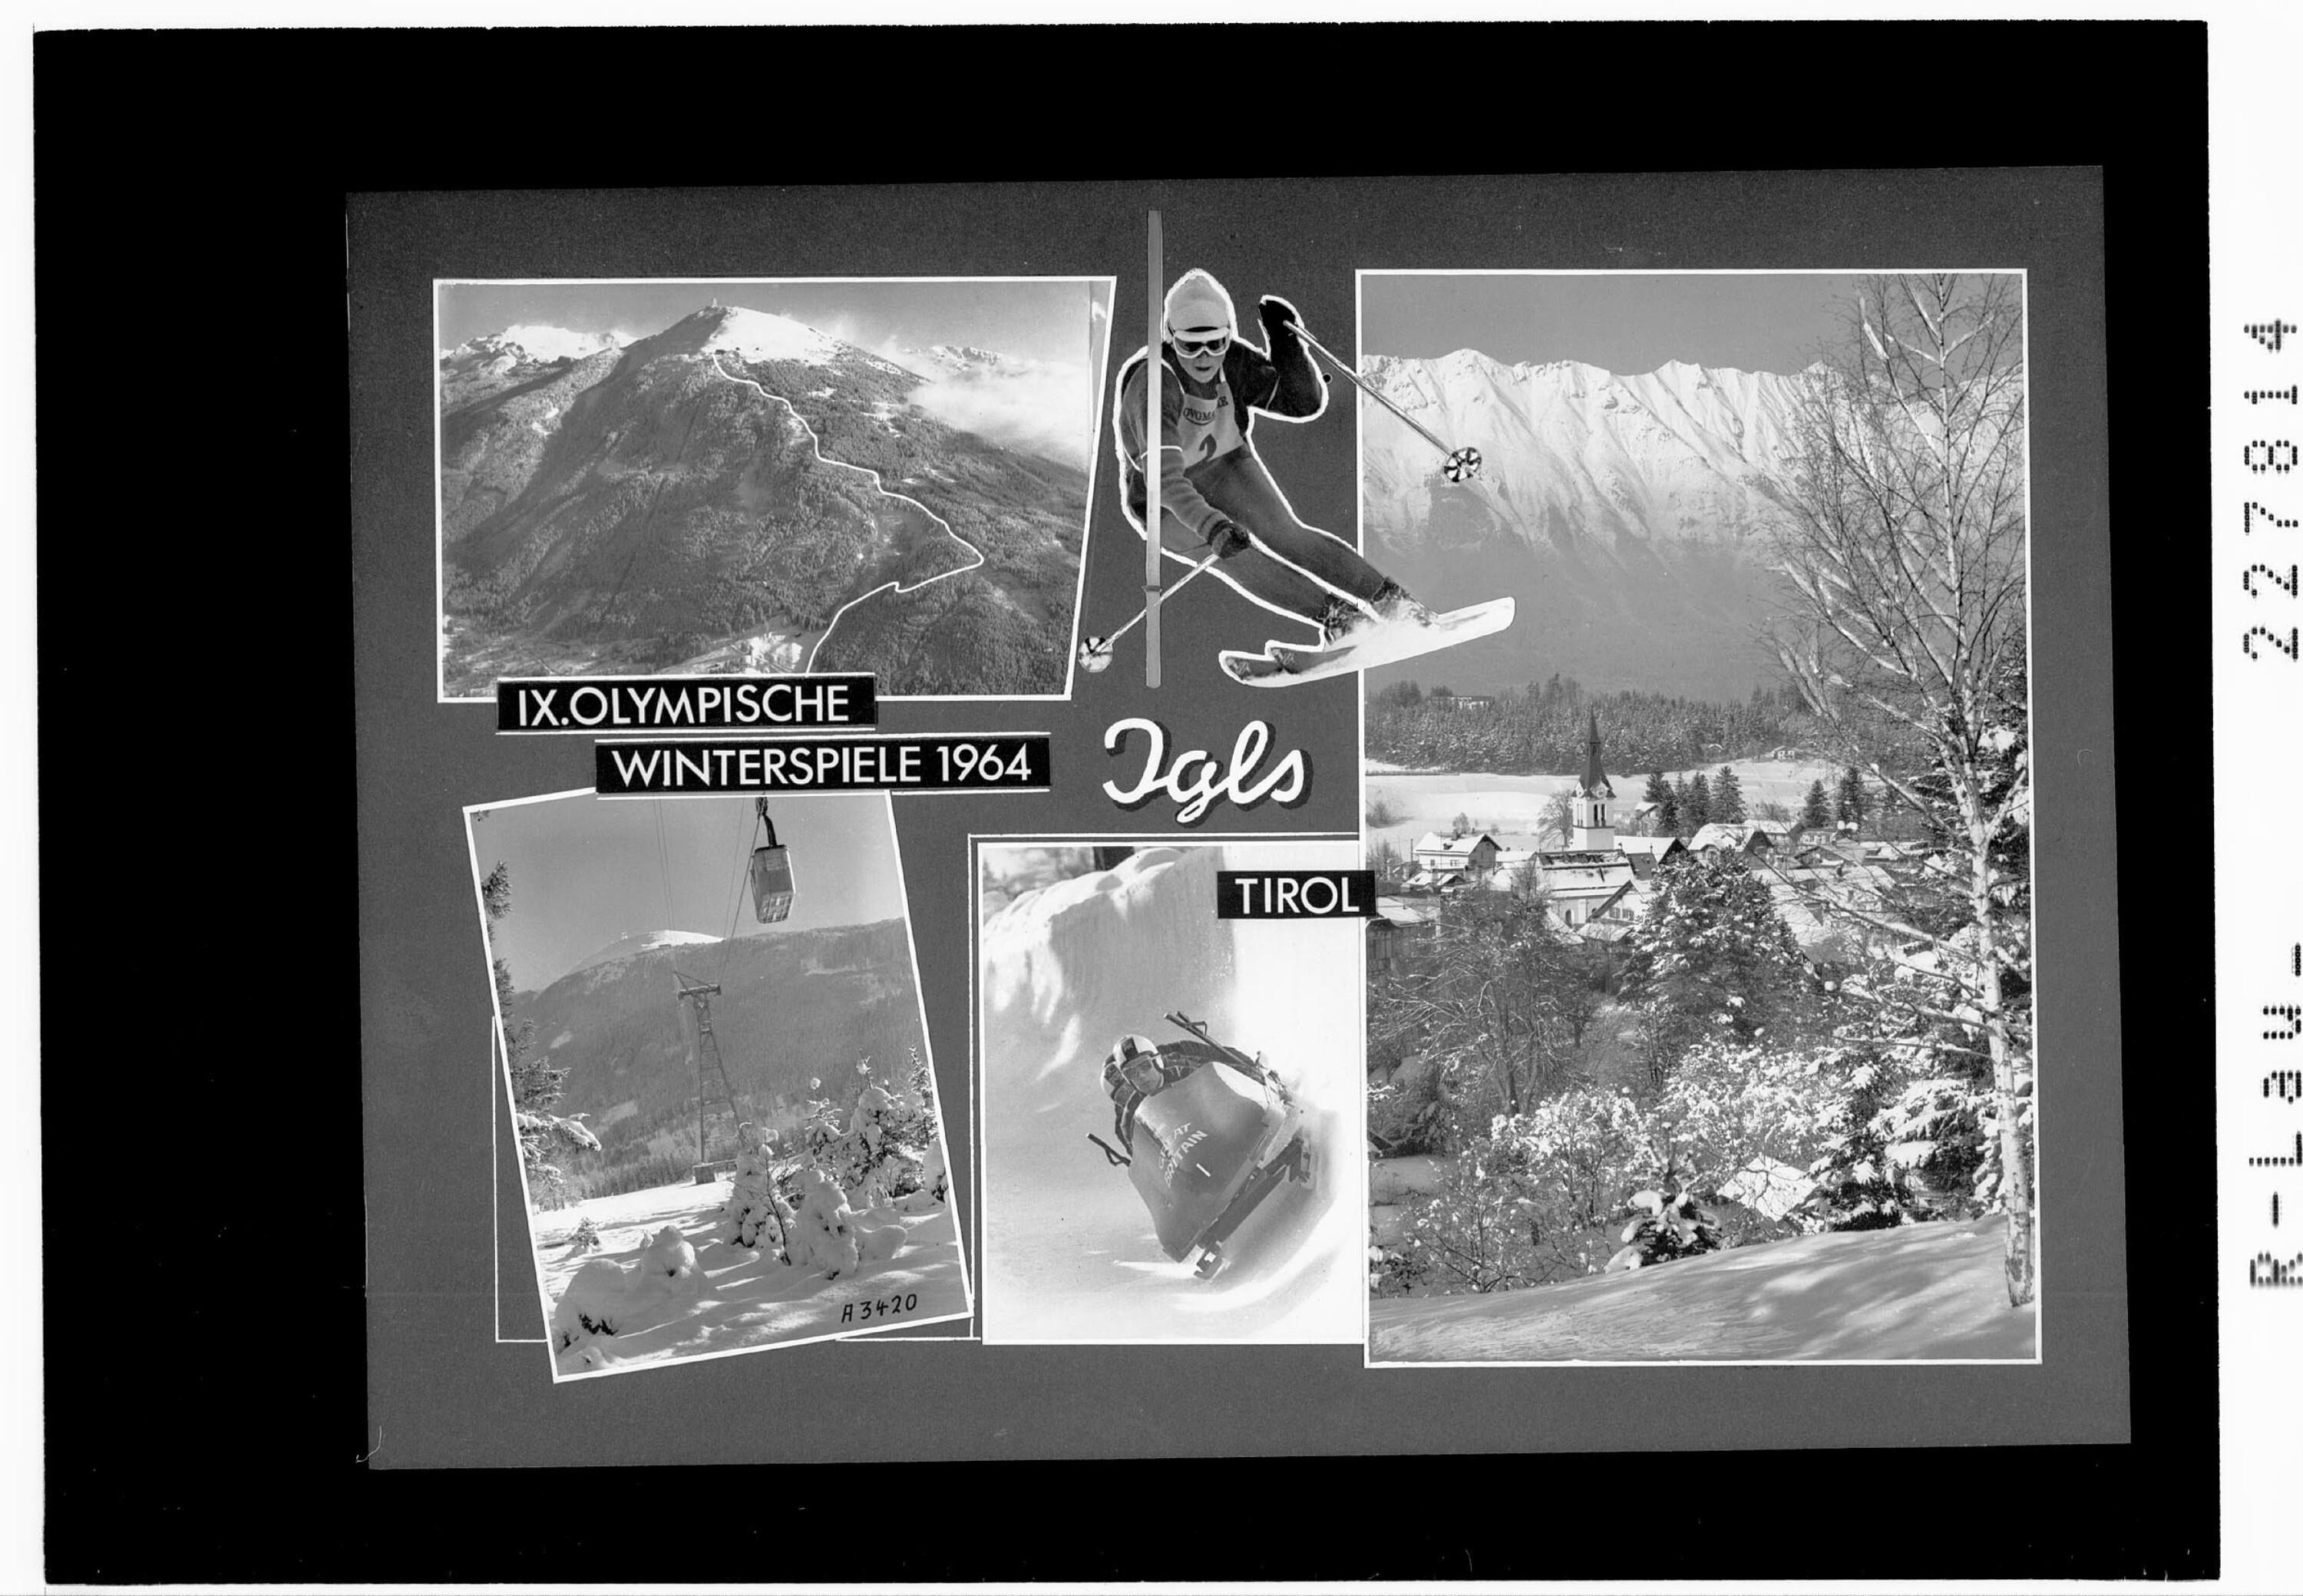 IX Olympische Winterspiele 1964 / Igls / Tirol></div>


    <hr>
    <div class=